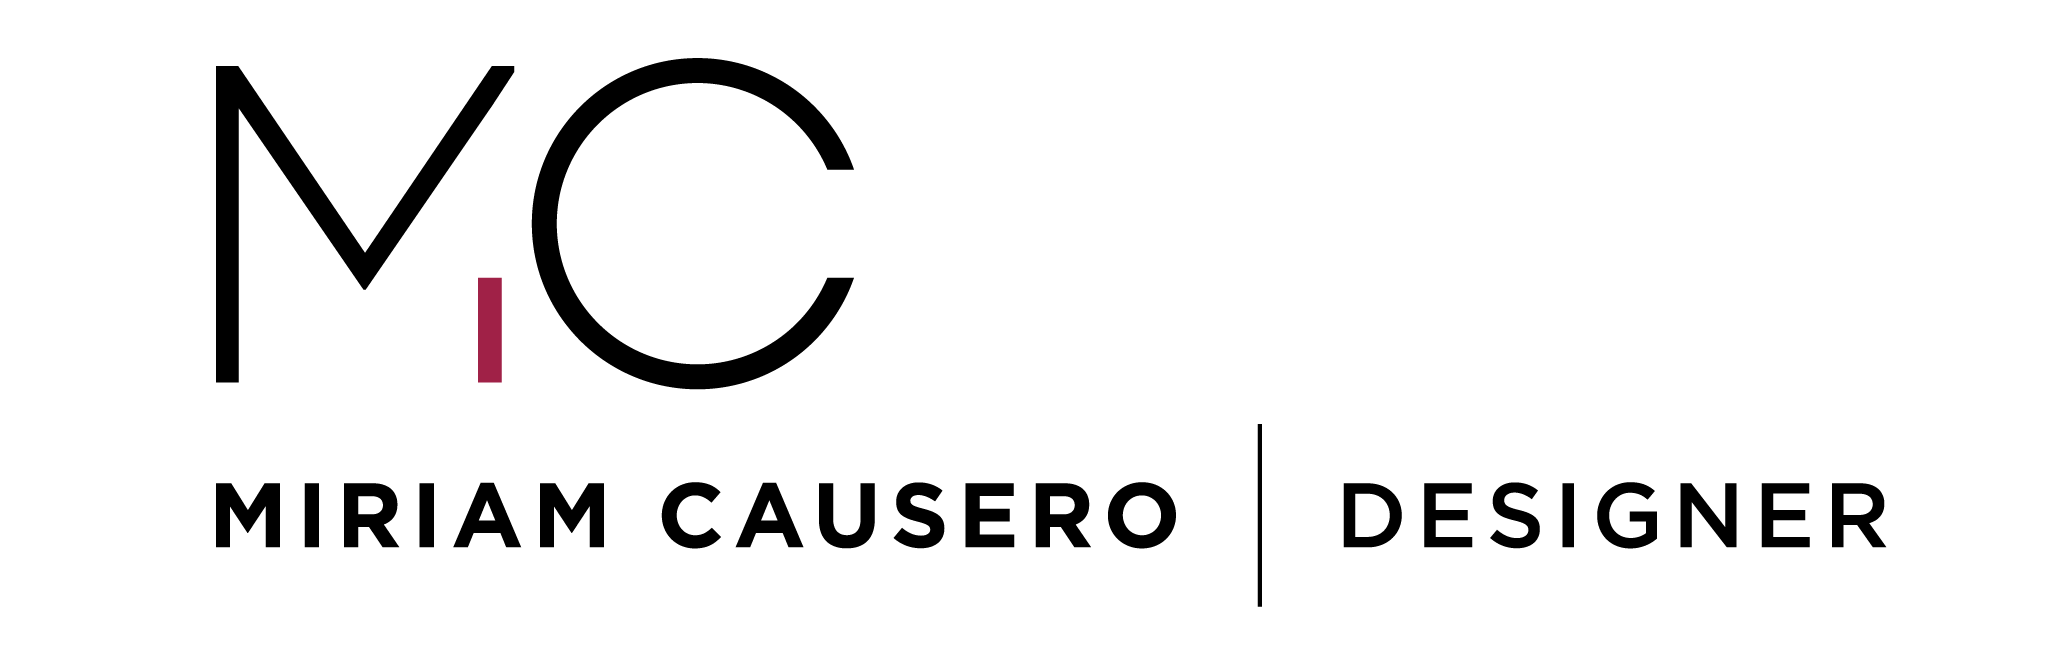 Miriam causero logo